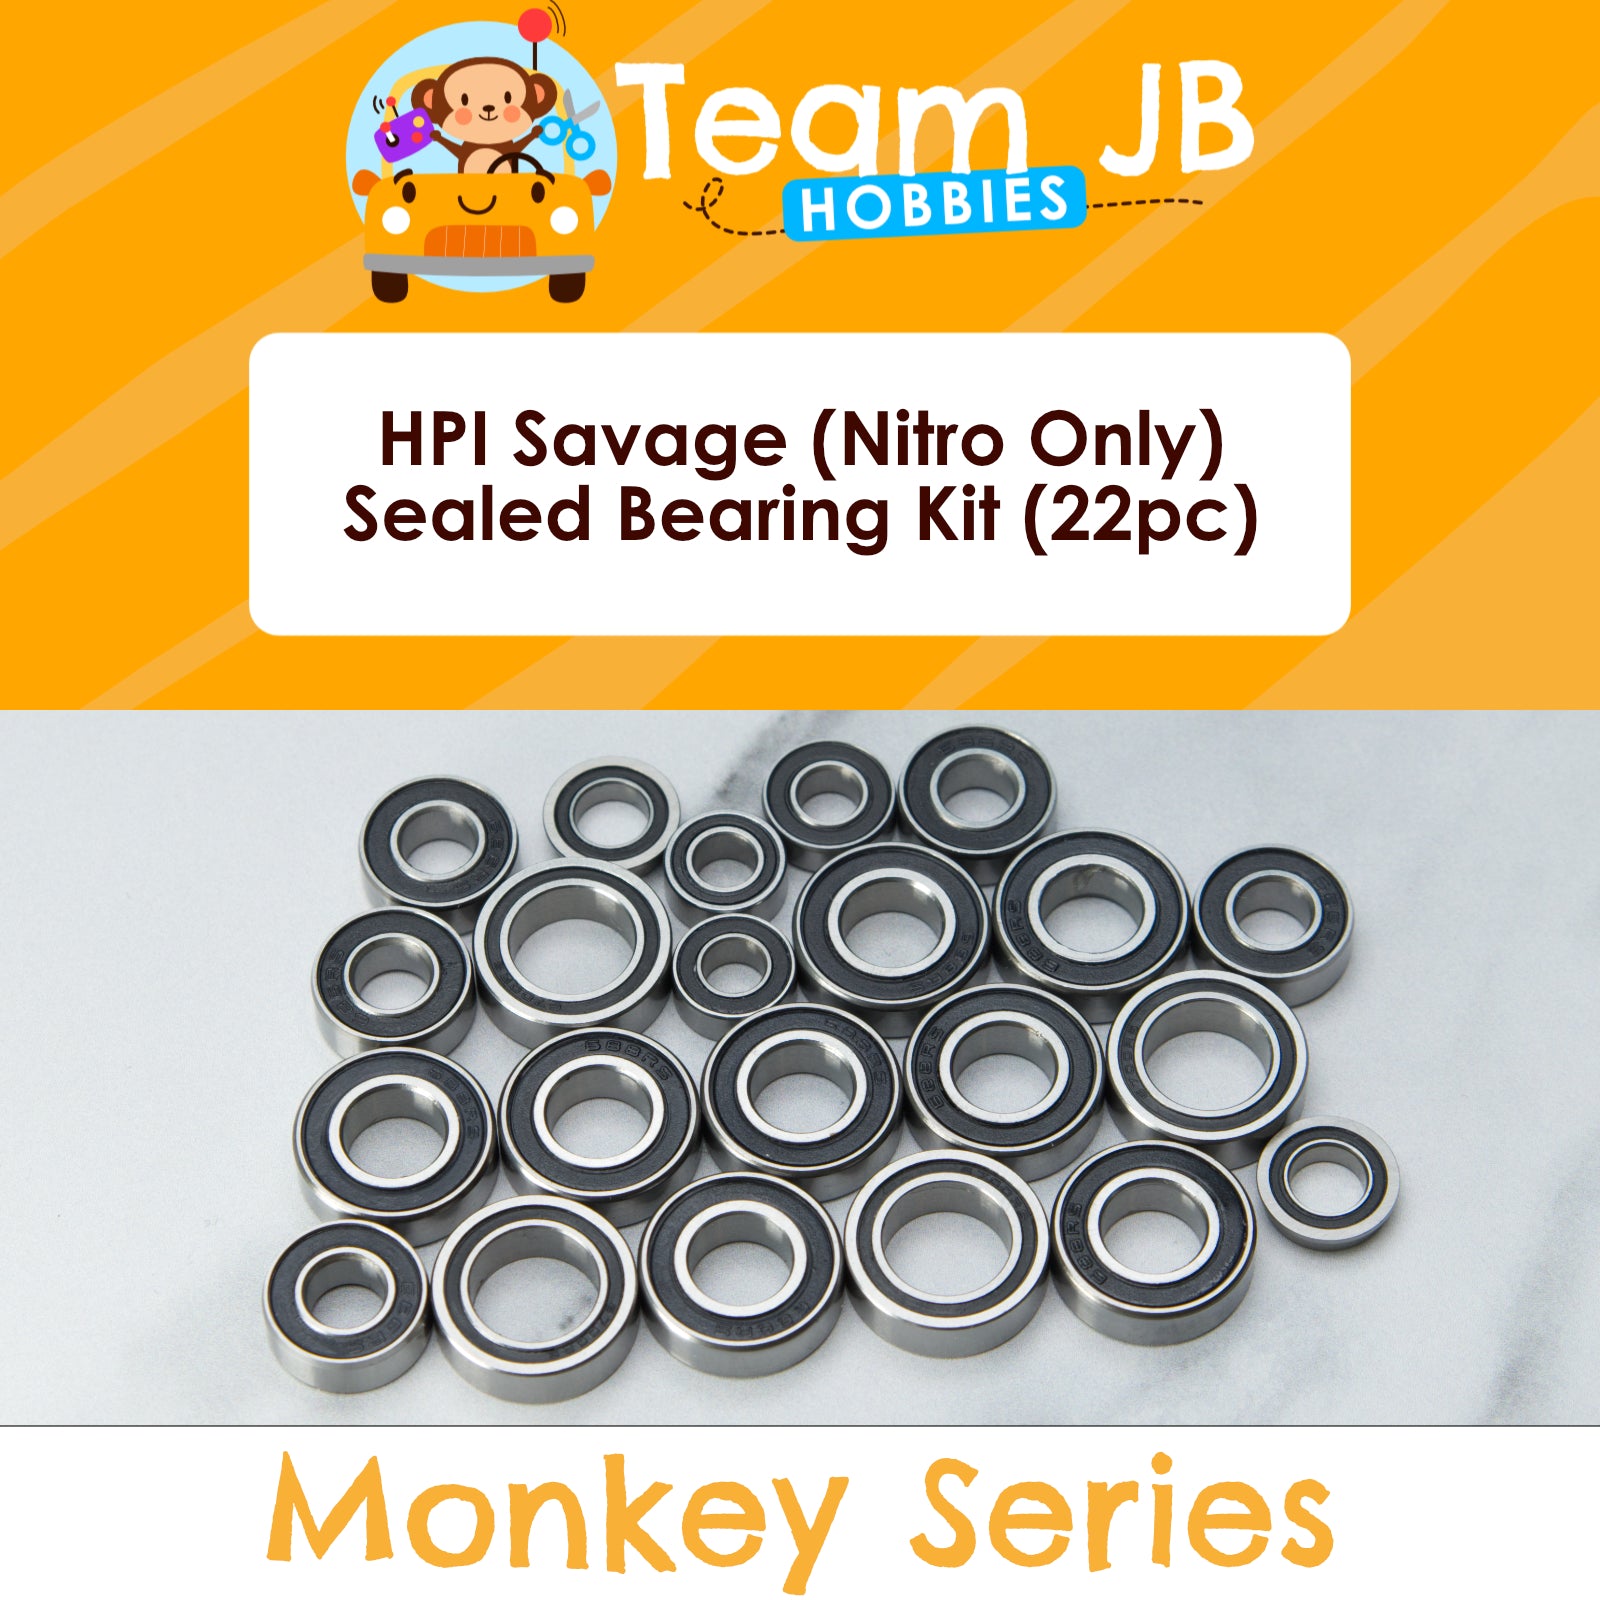 HPI Savage (Nitro Only) - Sealed Bearing Kit